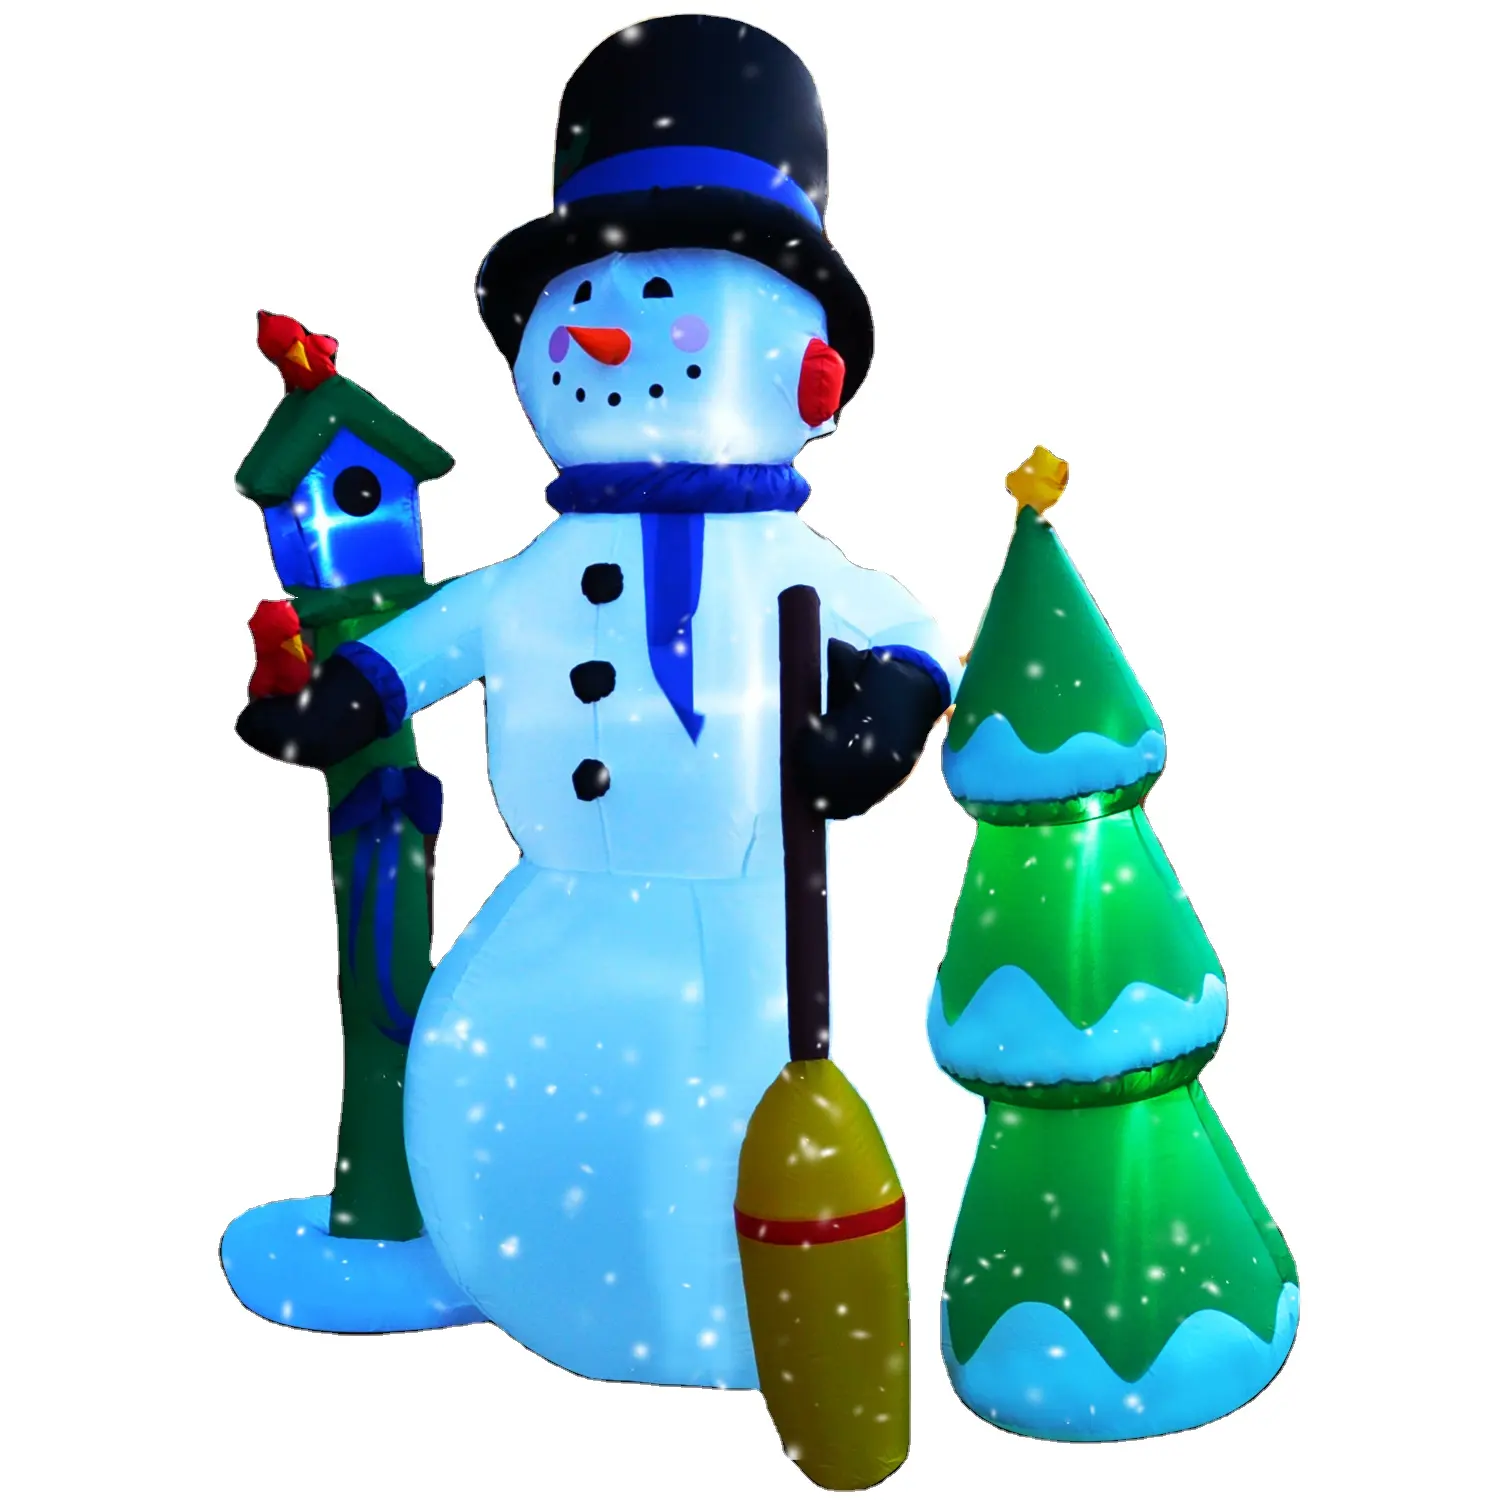 Boneco de neve inflável alto, boneco de neve com lâmpada e besom